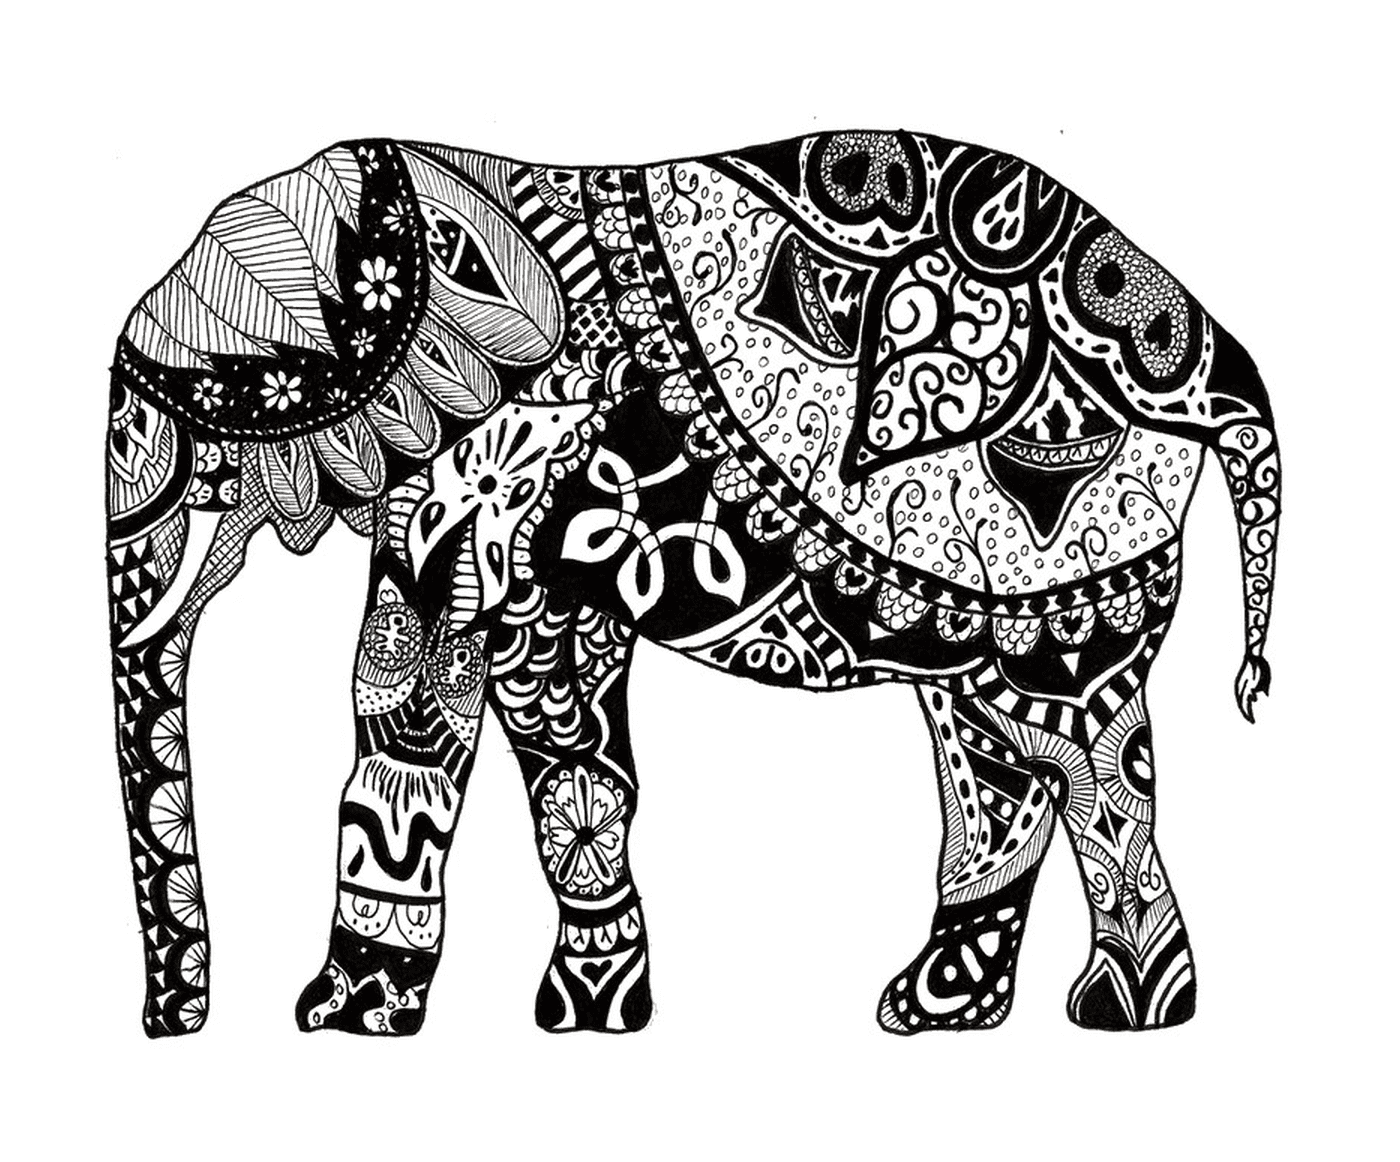  Um elefante com muitas mandalas em seu corpo 